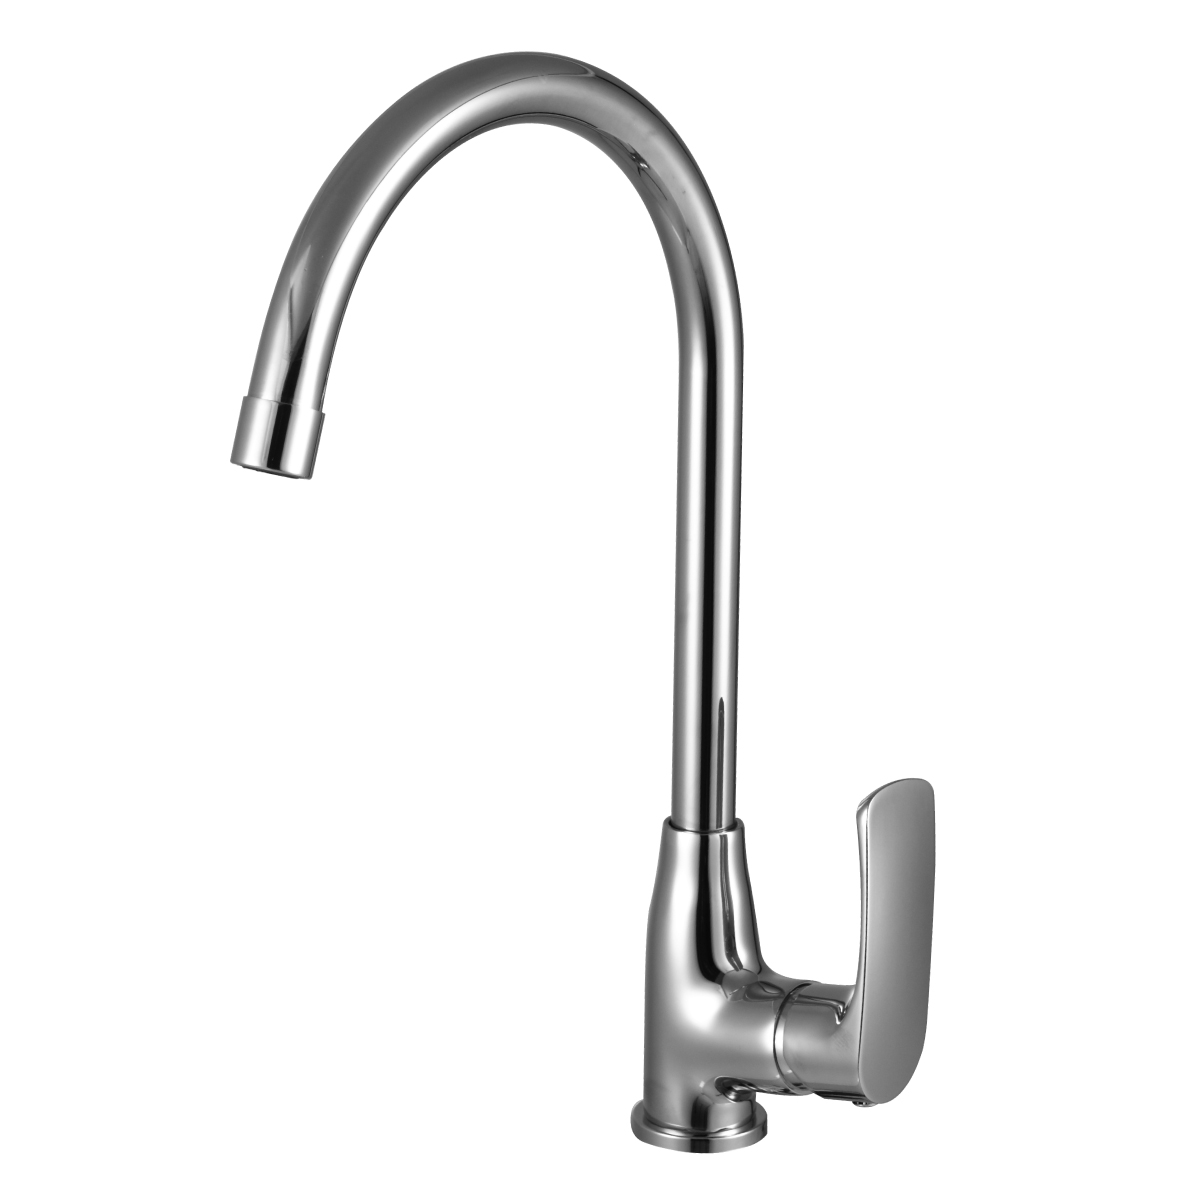 LM1705C Kitchen faucet
with swivel spout